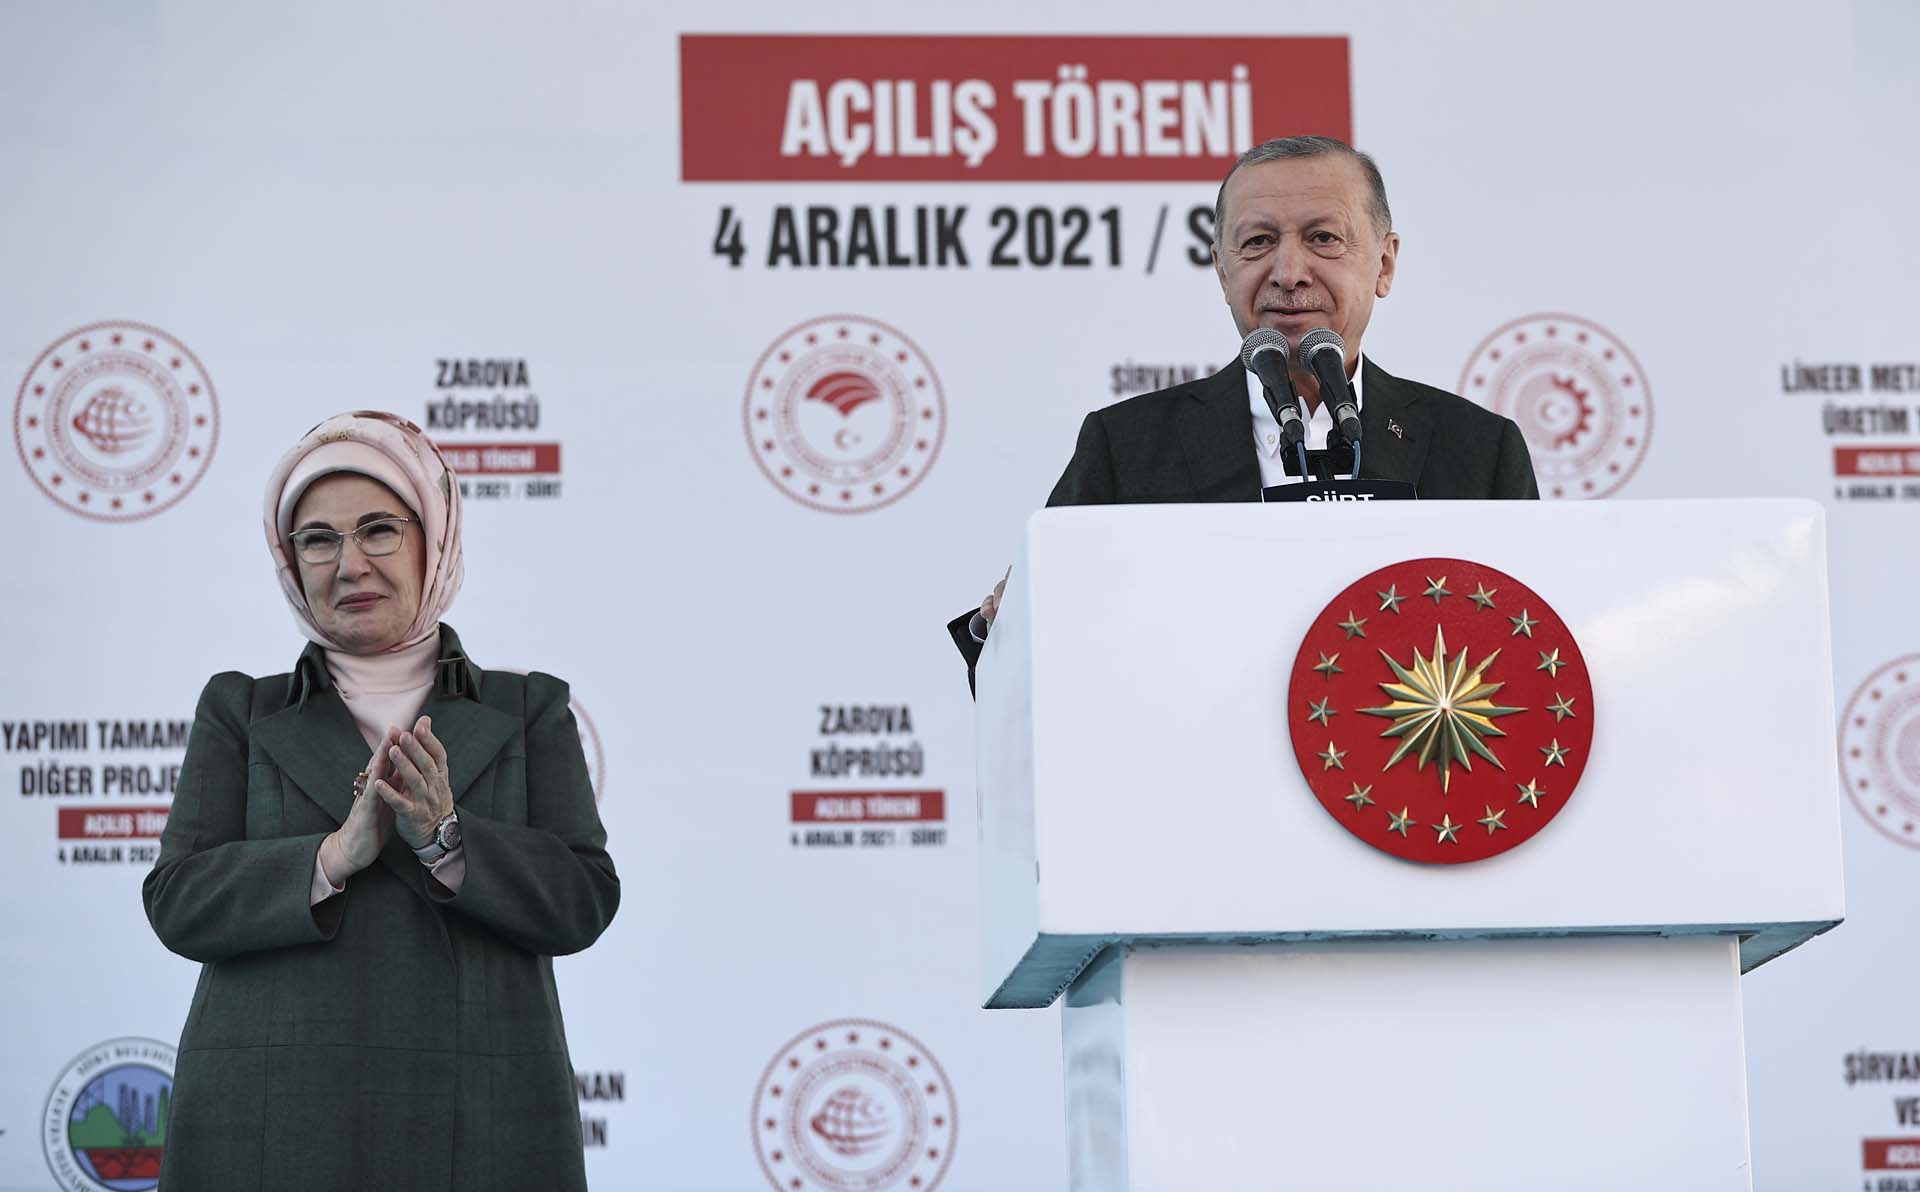 Cumhurbaşkanı Erdoğan, Siirt'te toplu açılış töreninde konuştu: Asgari ücreti kayıpları telafi edecek düzeyde belirleyerek insanlarımızı ferahlatacağız